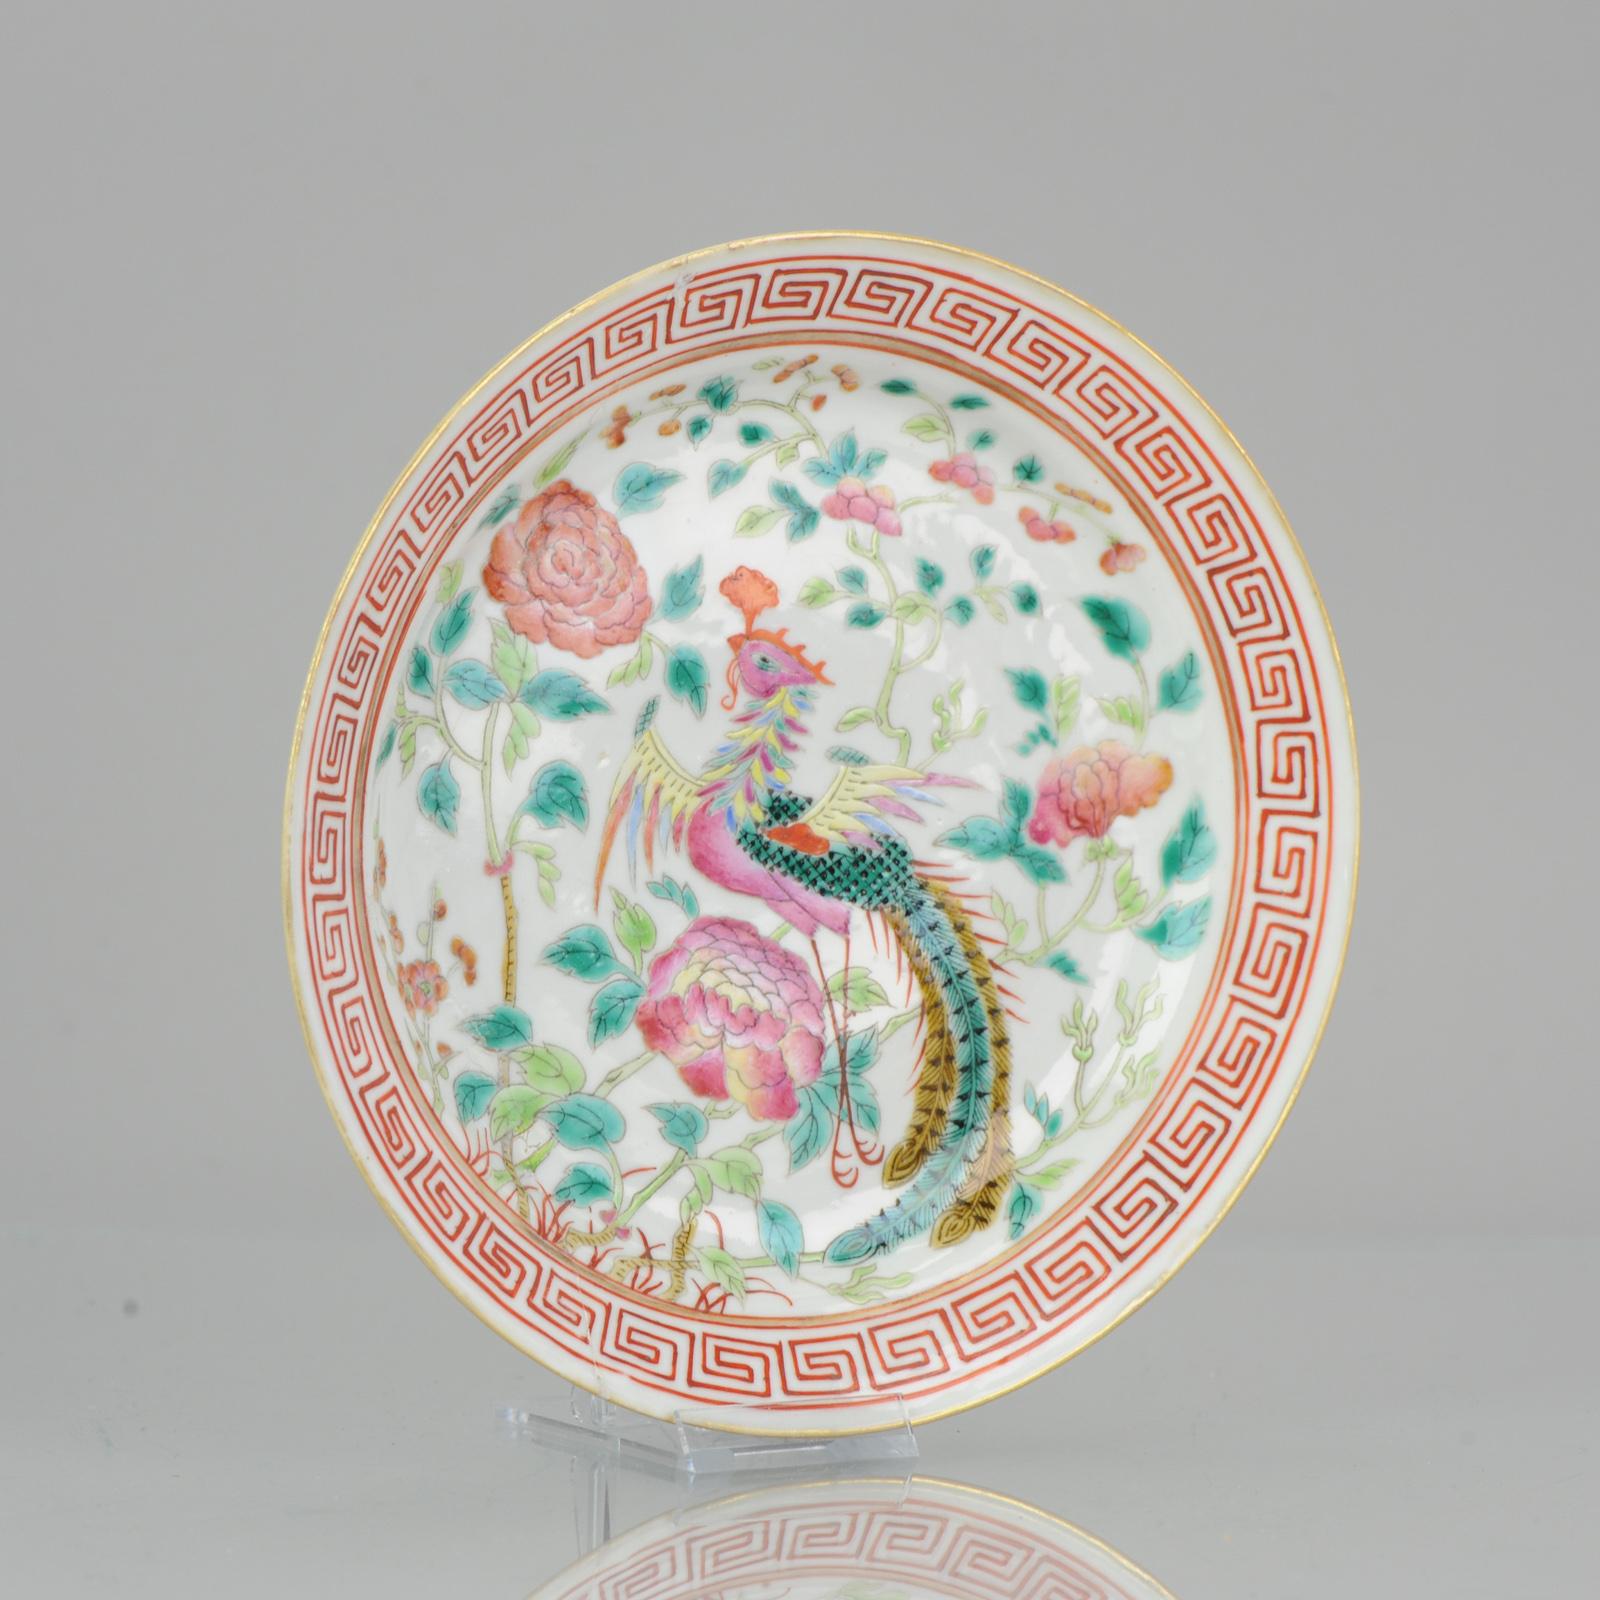 Belle assiette en porcelaine chinoise avec une couleur étonnante et une peinture de bonne qualité. Fabriqué pour le marché chinois du détroit (Malaisie / Singapour). Marqué à la base.
Illustré et décrit dans 